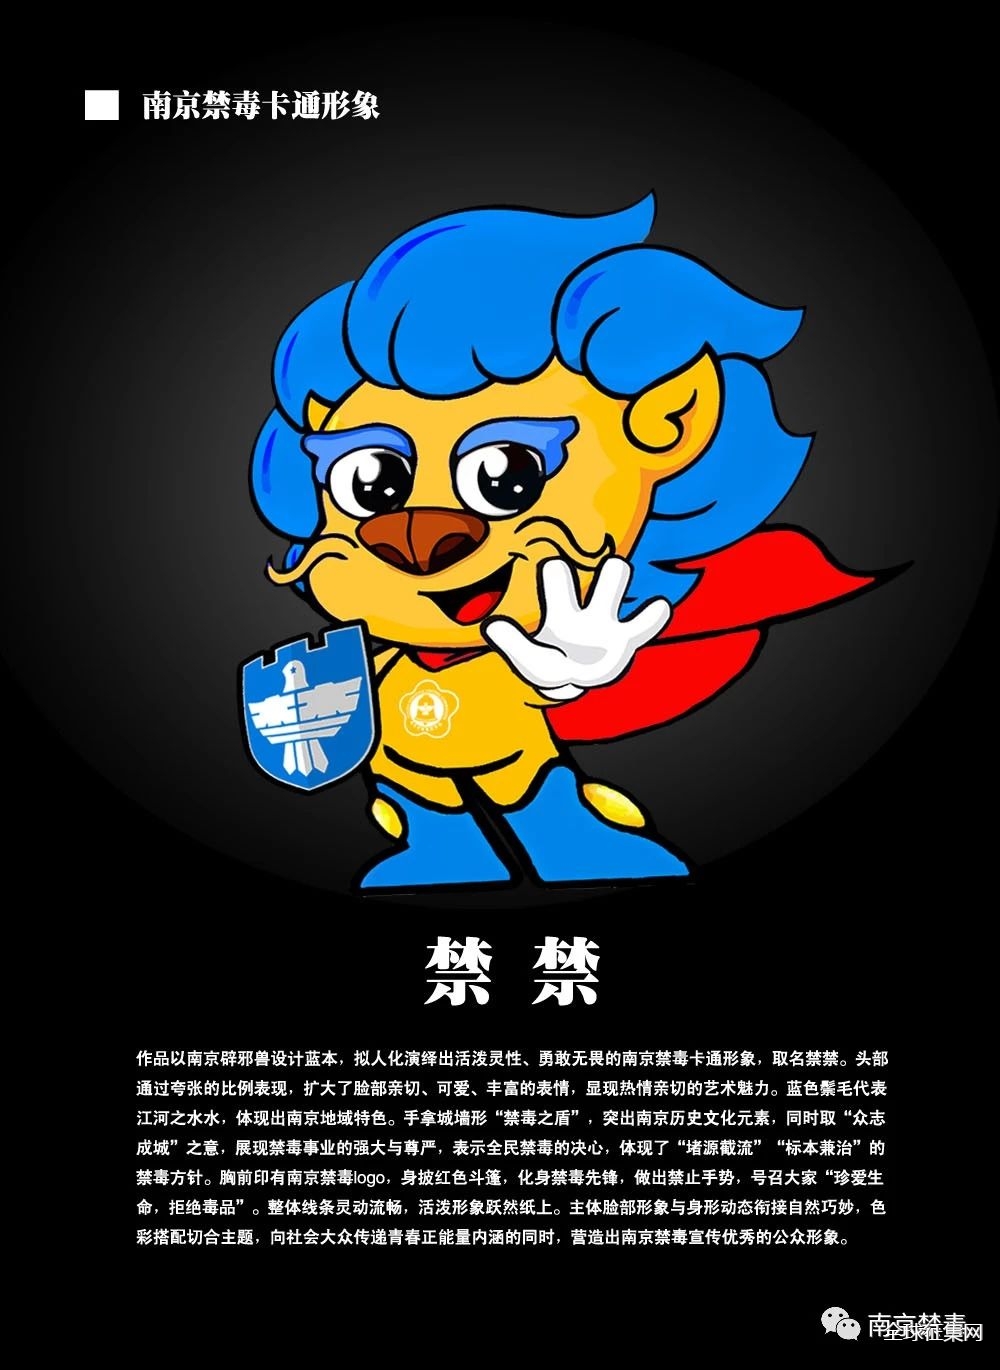 南京禁毒卡通形象设计征集作品微信投票火热进行中!